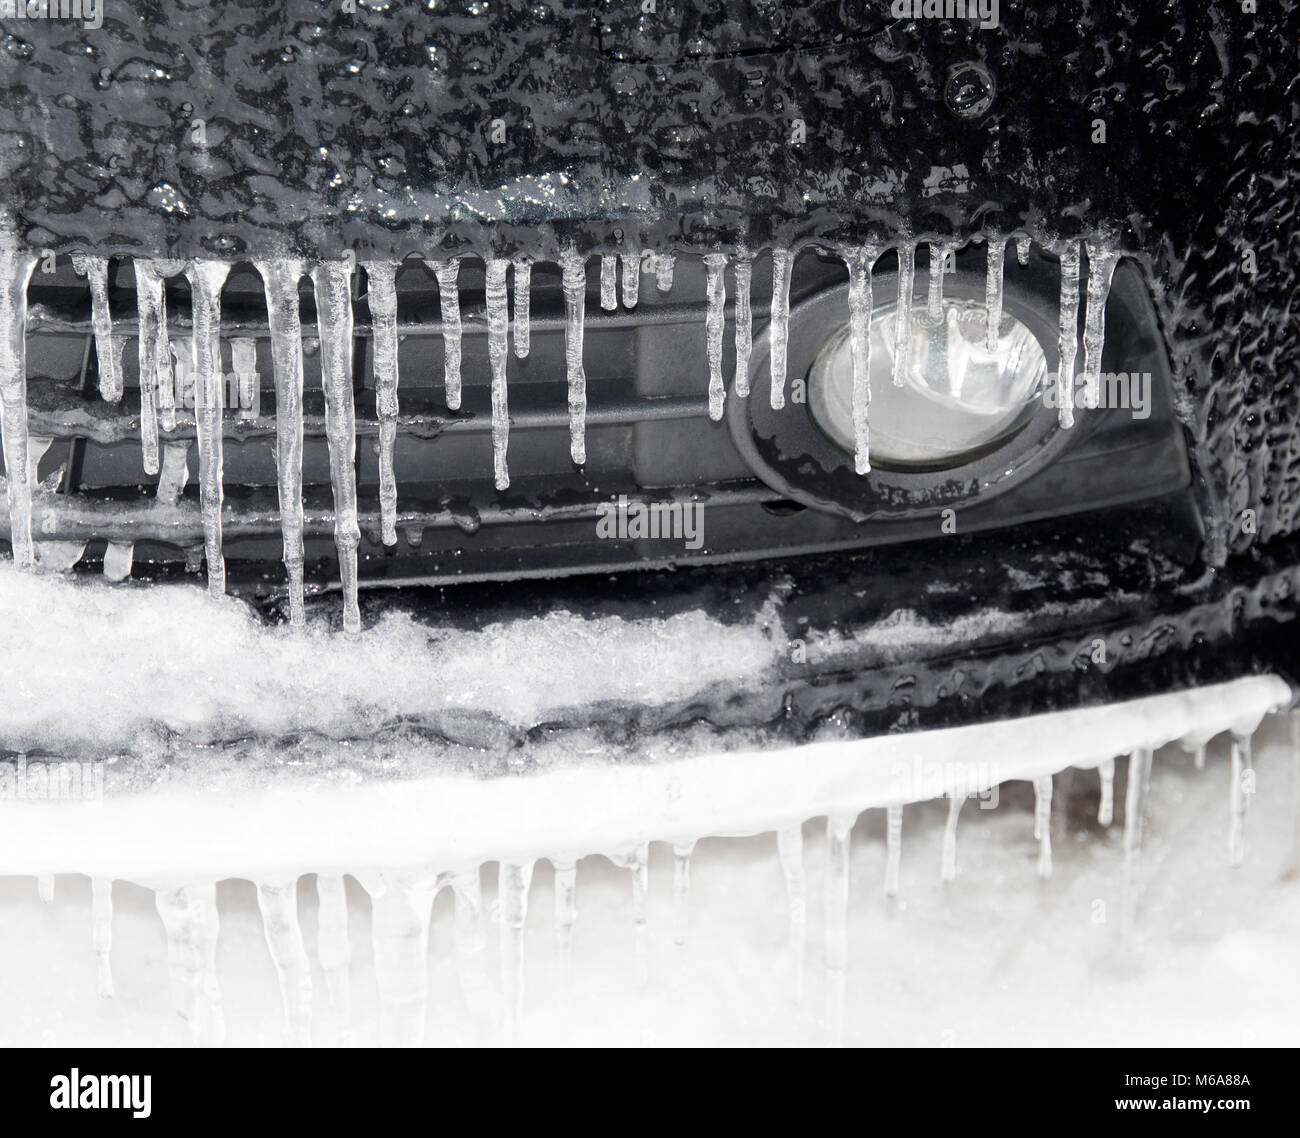 De nombreuses traces de givre sur le bord d'une voiture bonnet pendant les températures de gel de ce qu'on appelle la bête de l'Est, l'hiver 2018 Banque D'Images